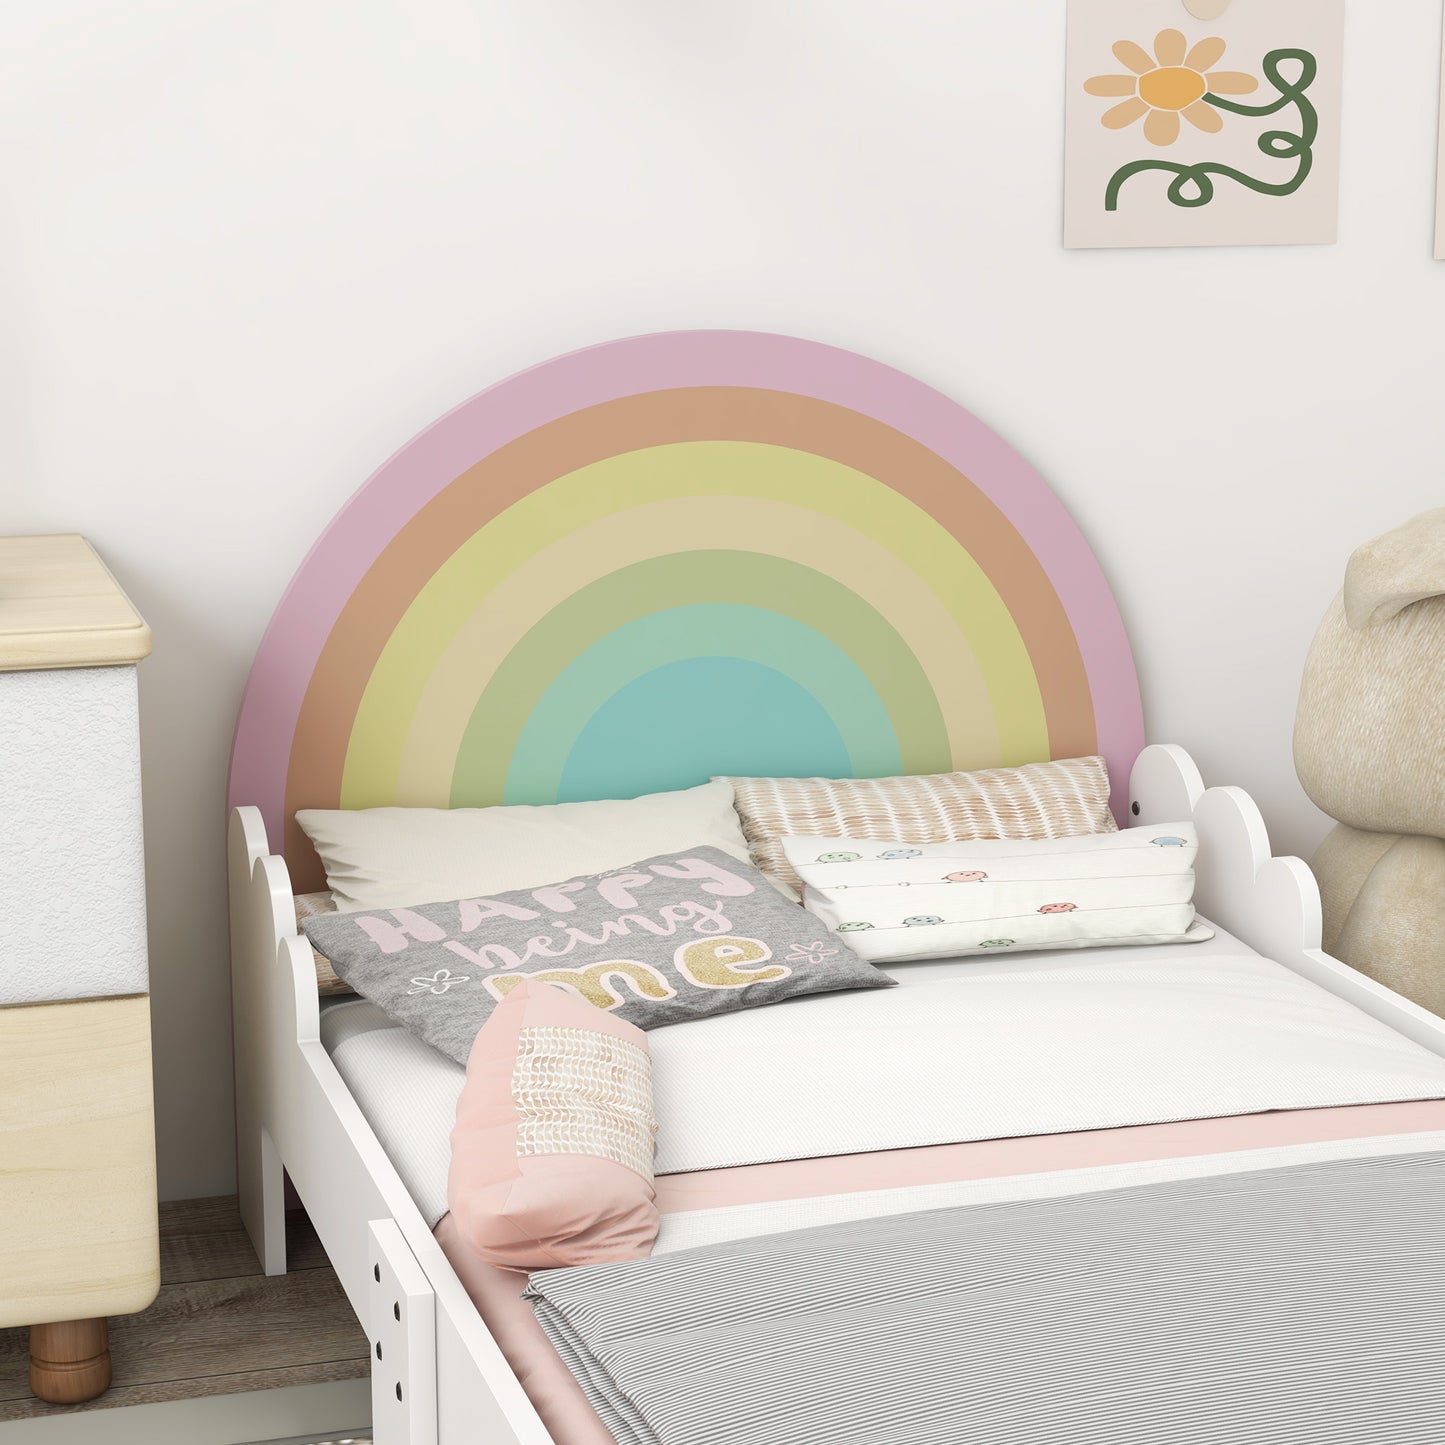 ZONEKIZ Cama para Niños de 3-6 Años 143x74x66 cm Cama Infantil de Madera en Forma de Arcoíris Mueble de Dormitorio Moderno Carga 80 kg Rosa